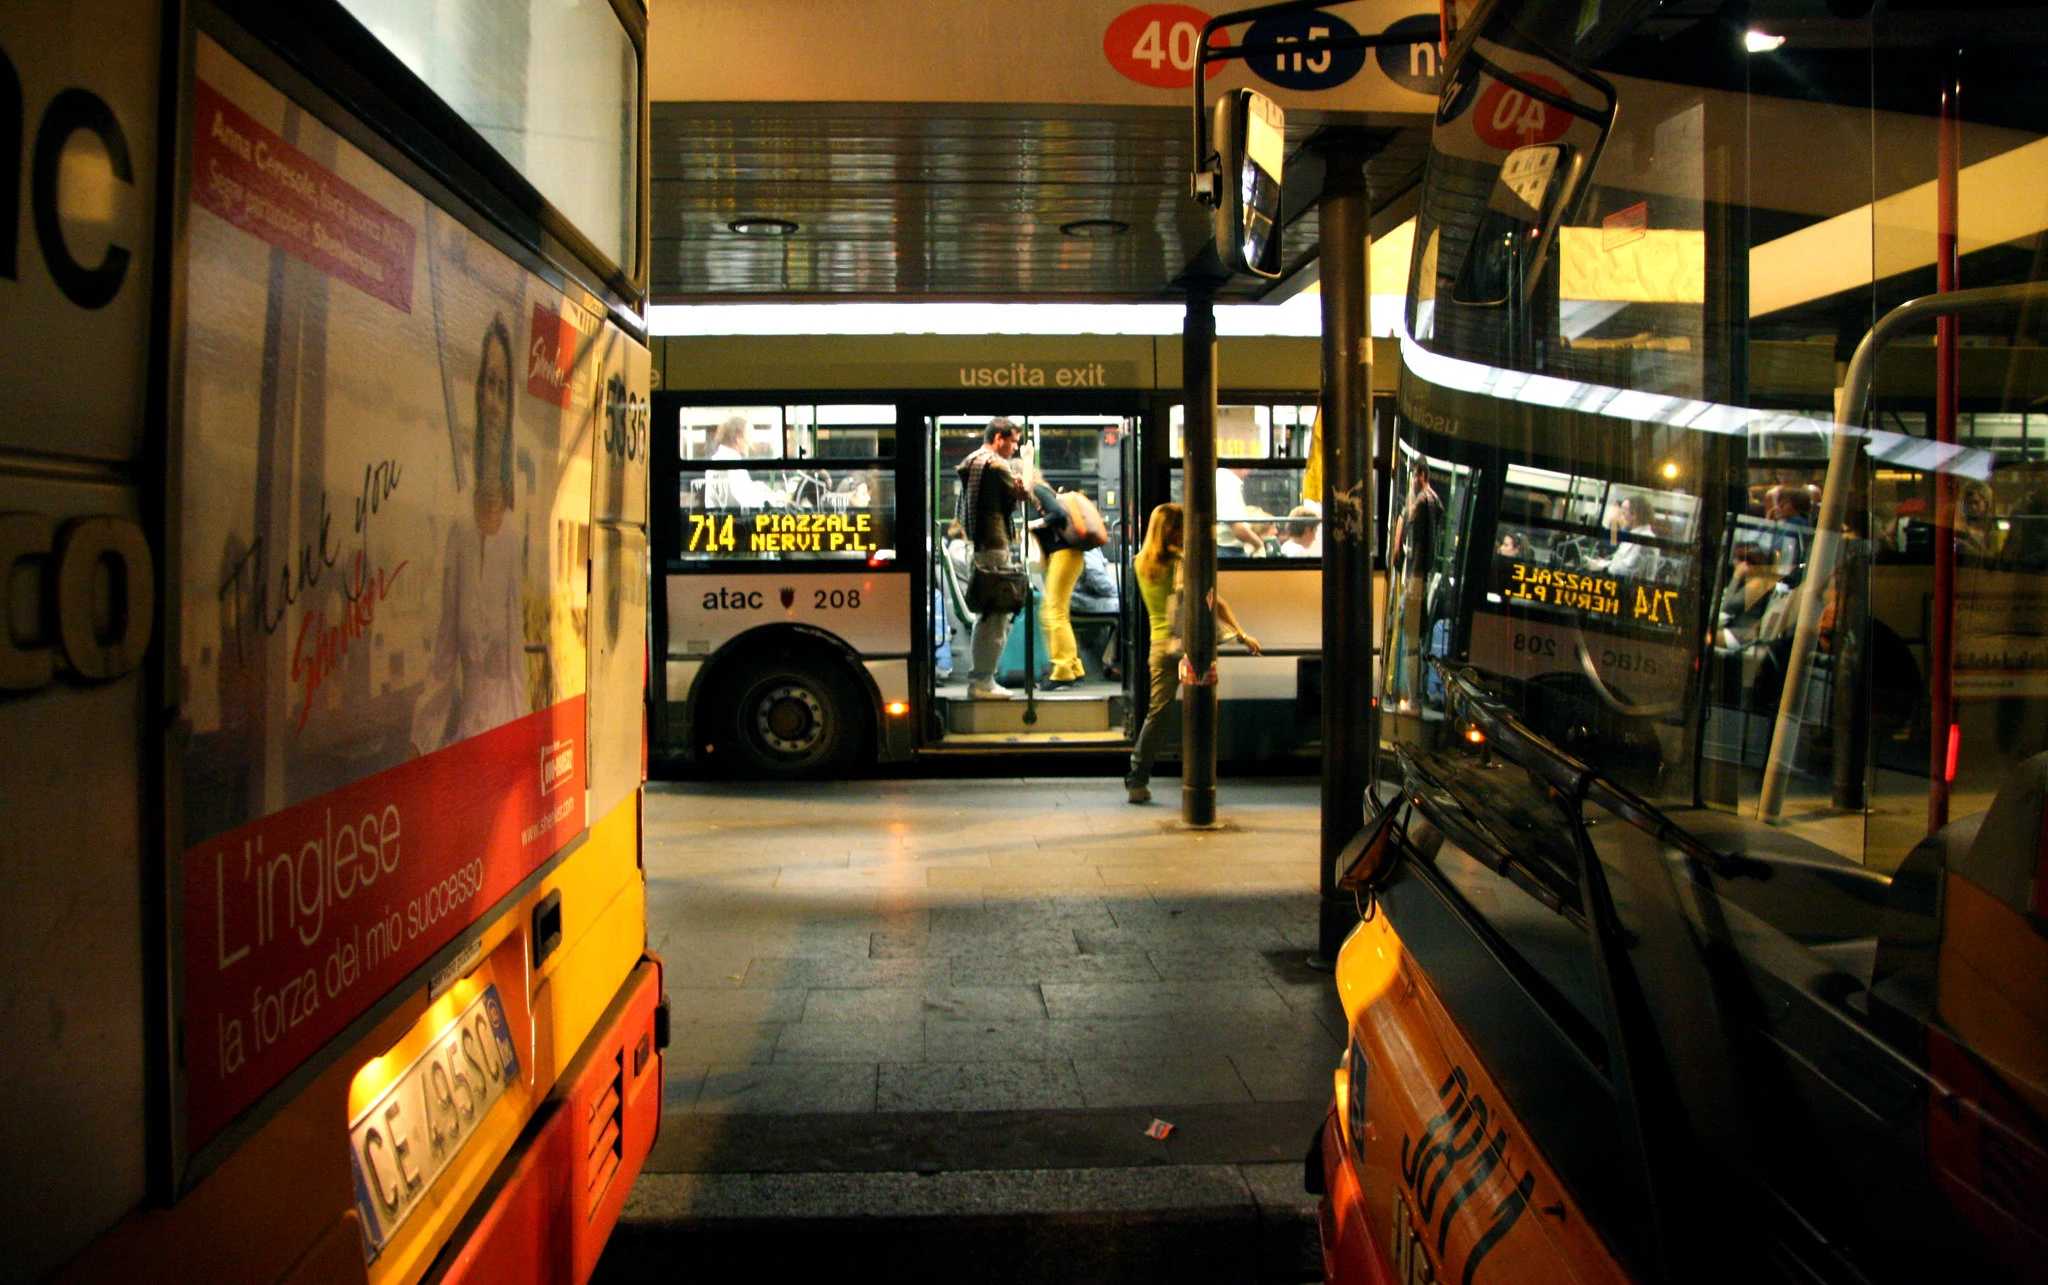 Transporte público de Roma: Autobuses en Roma